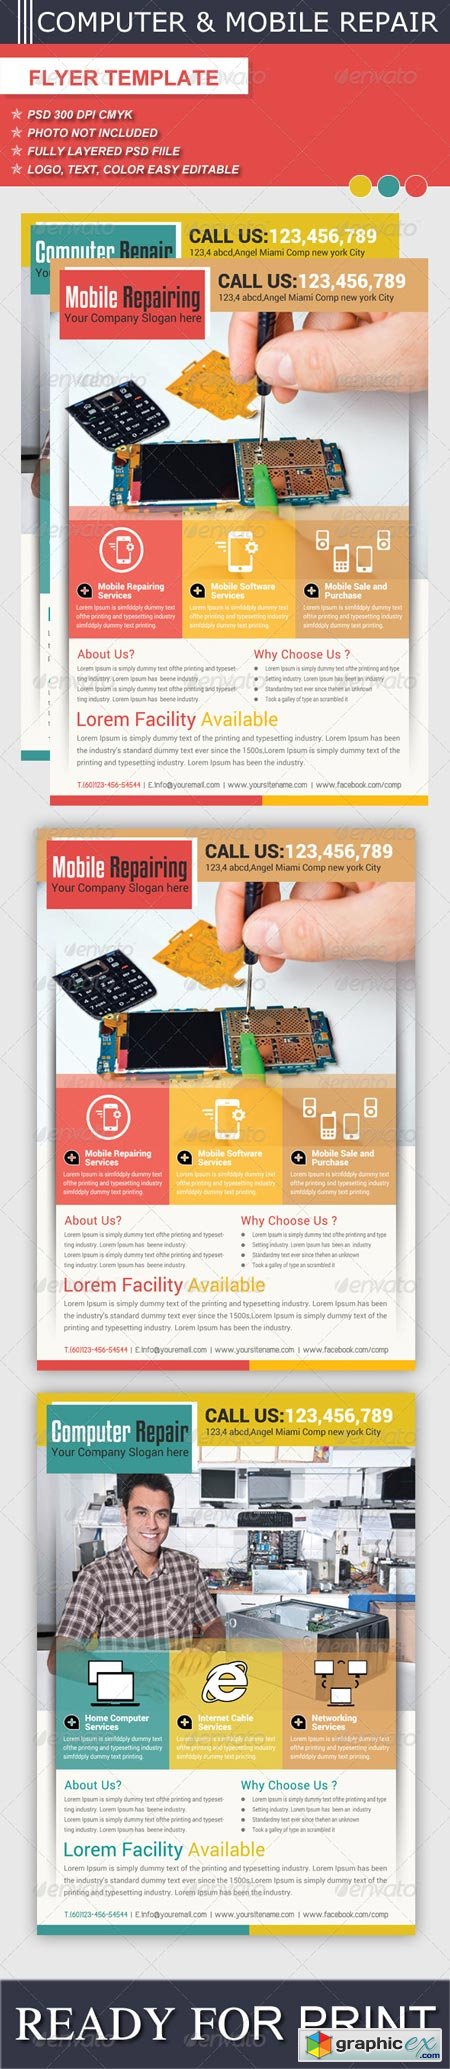 Computer & Mobile Repair Flyer Template 6217430